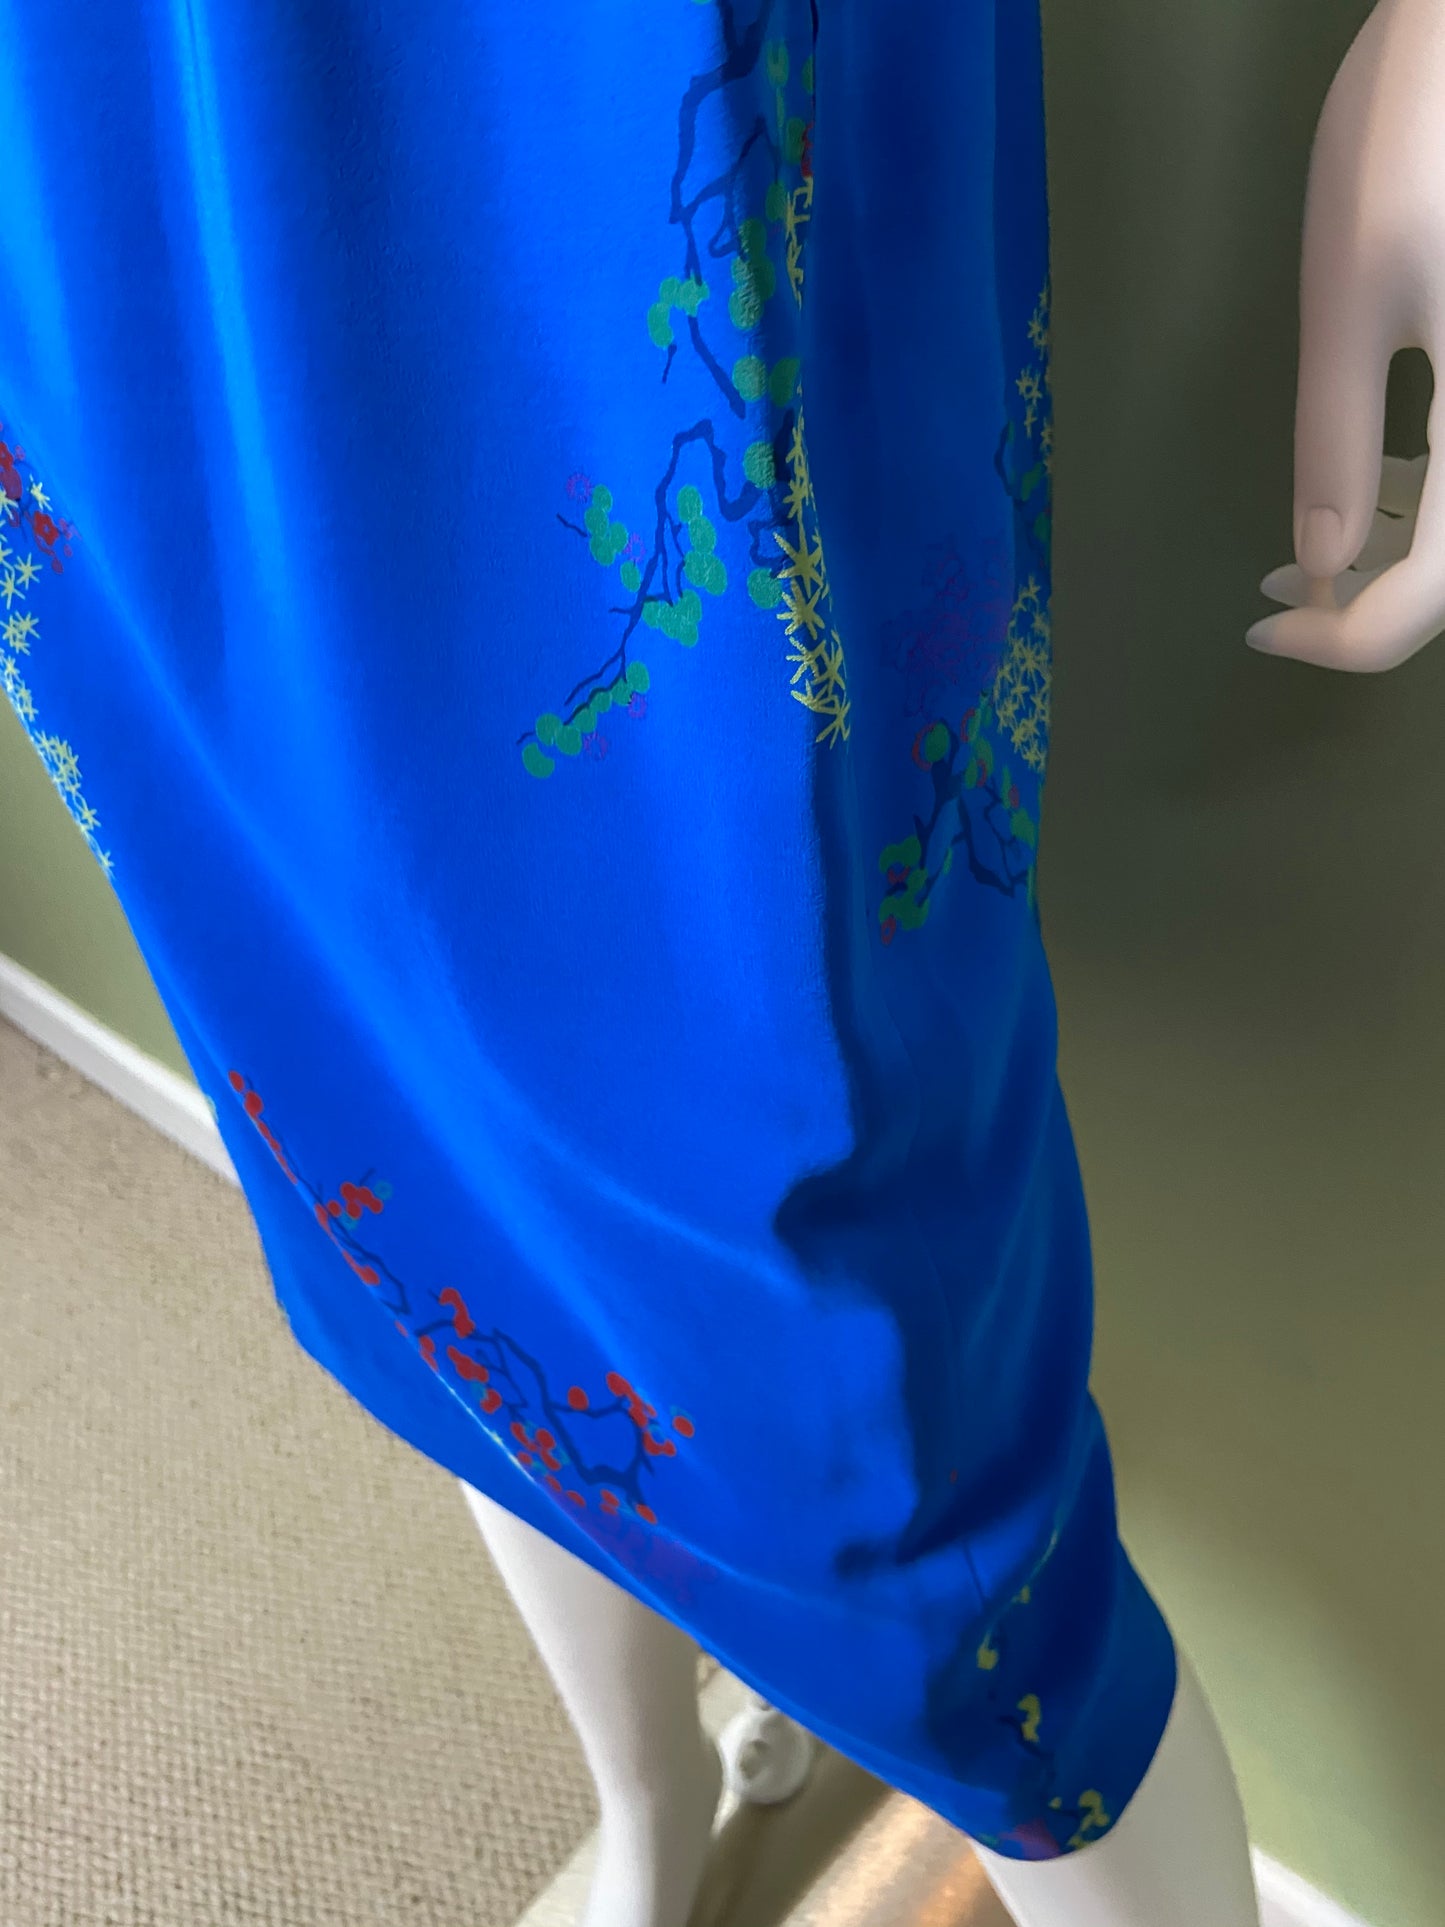 LANVIN Vintage Floral Royal Blue Silk Dress with Skirt